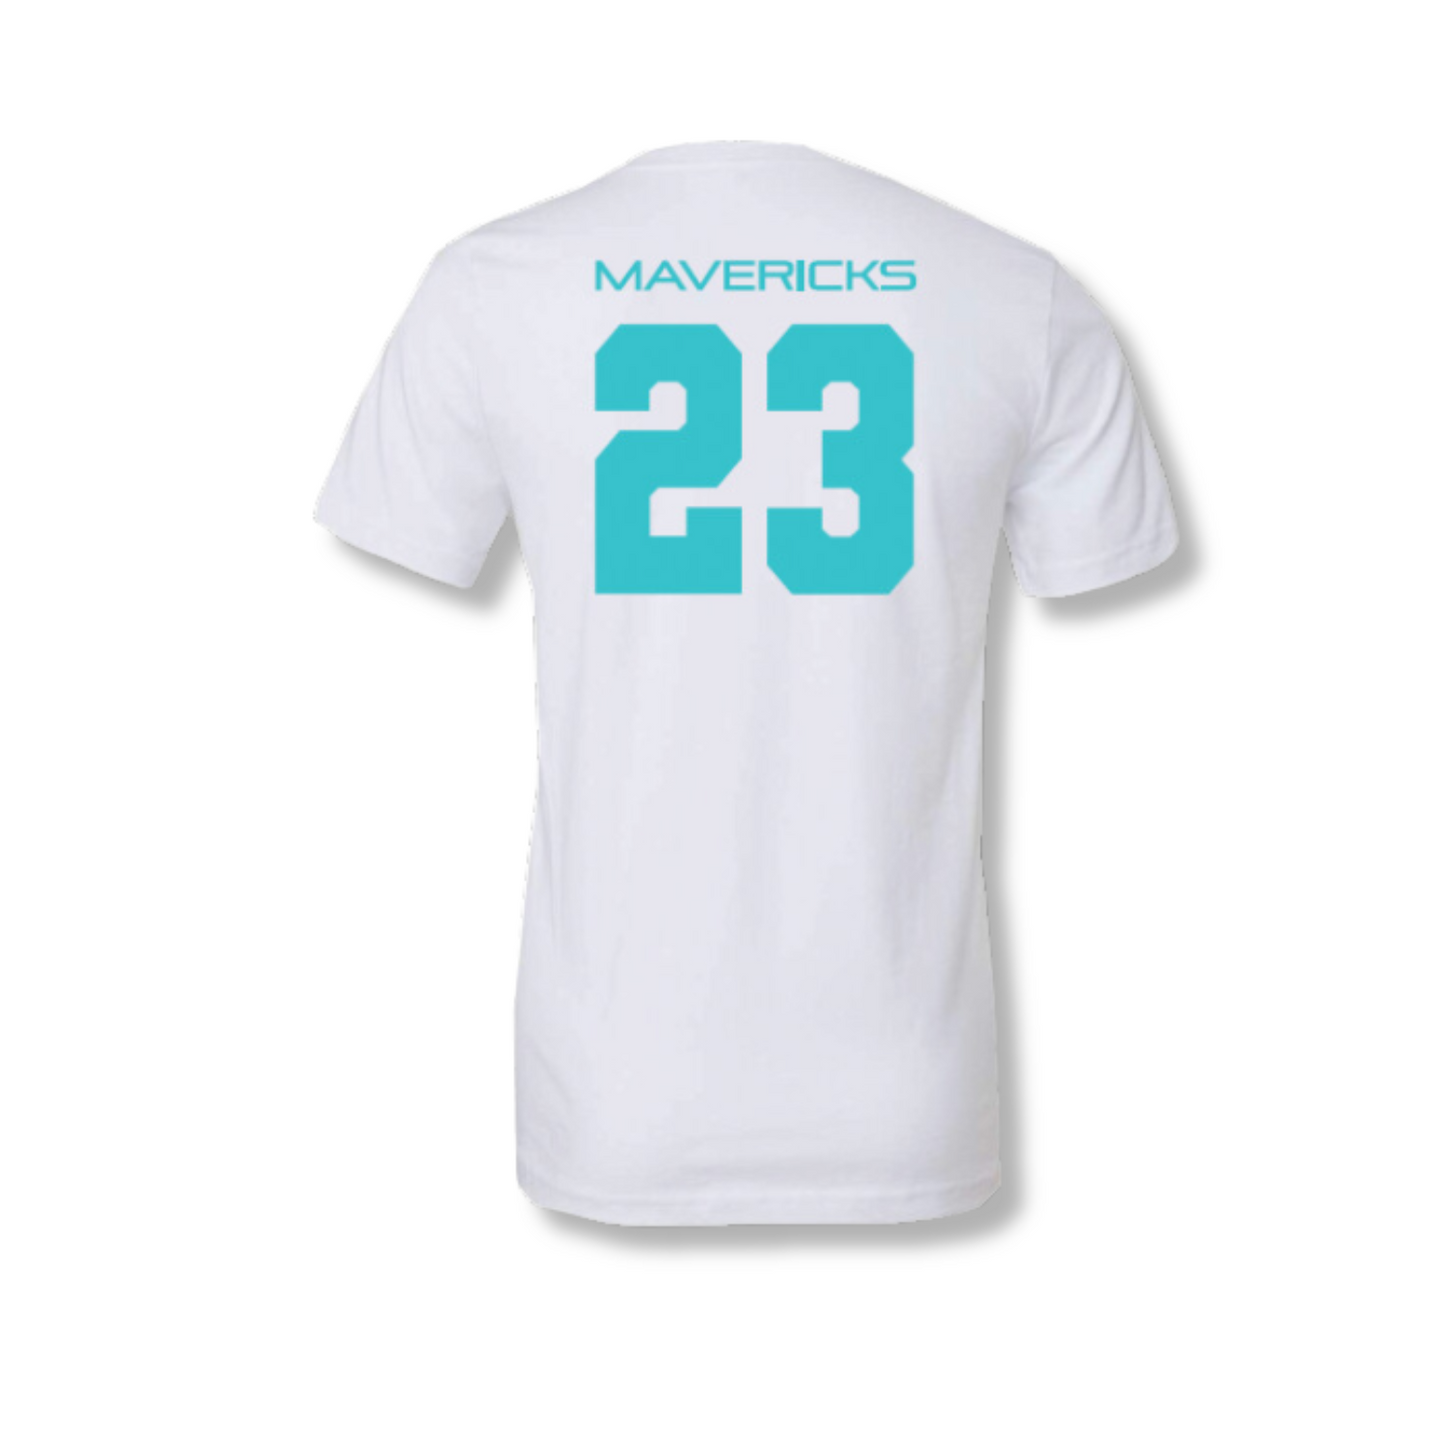 Mavericks NFL 2023 Shirts